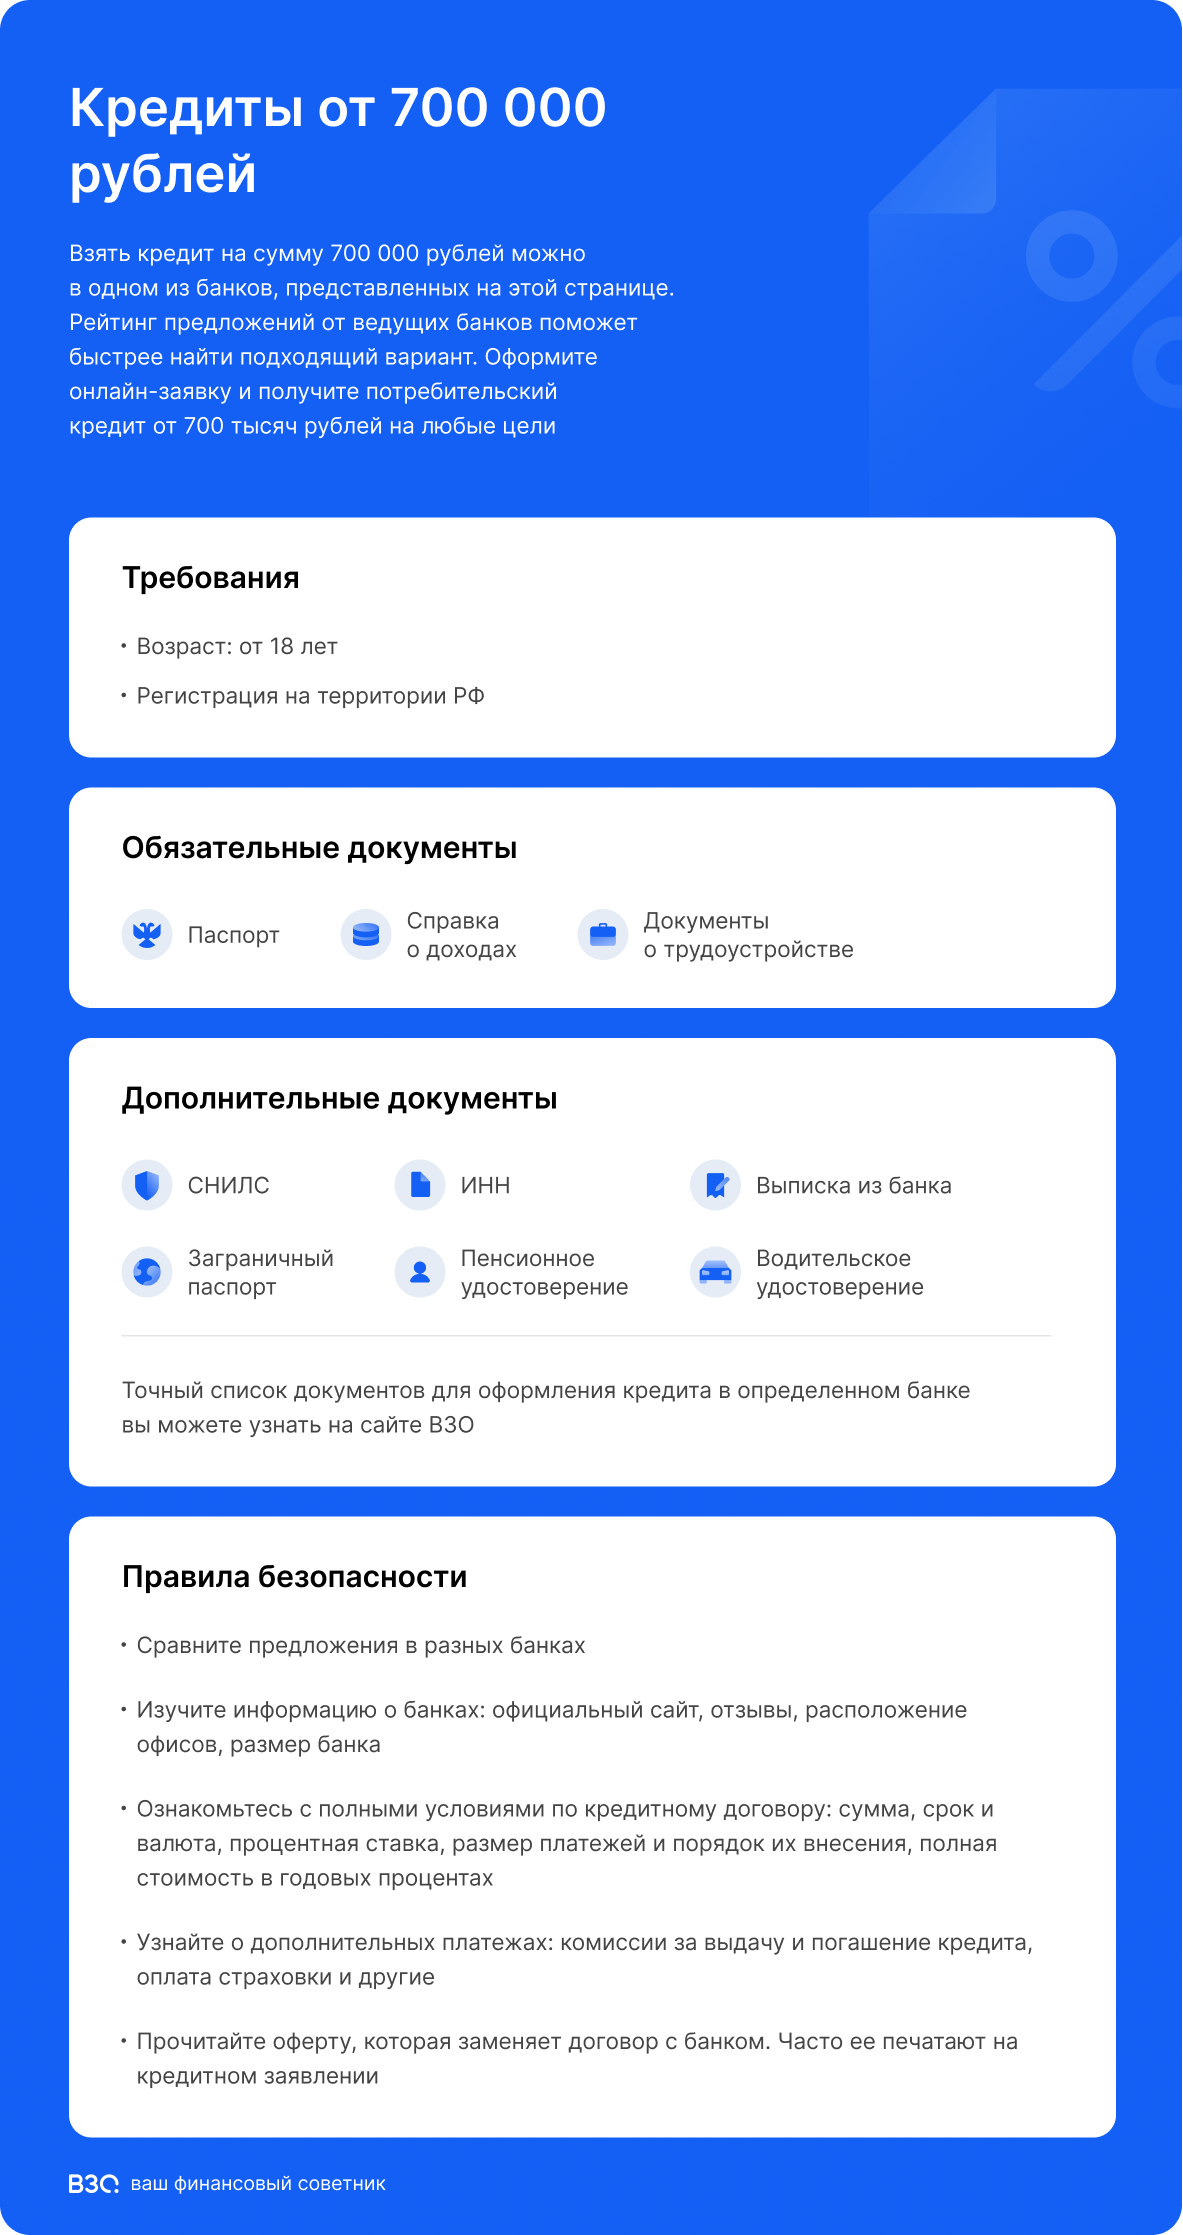 Кредиты от 700 000 рублей инфографика